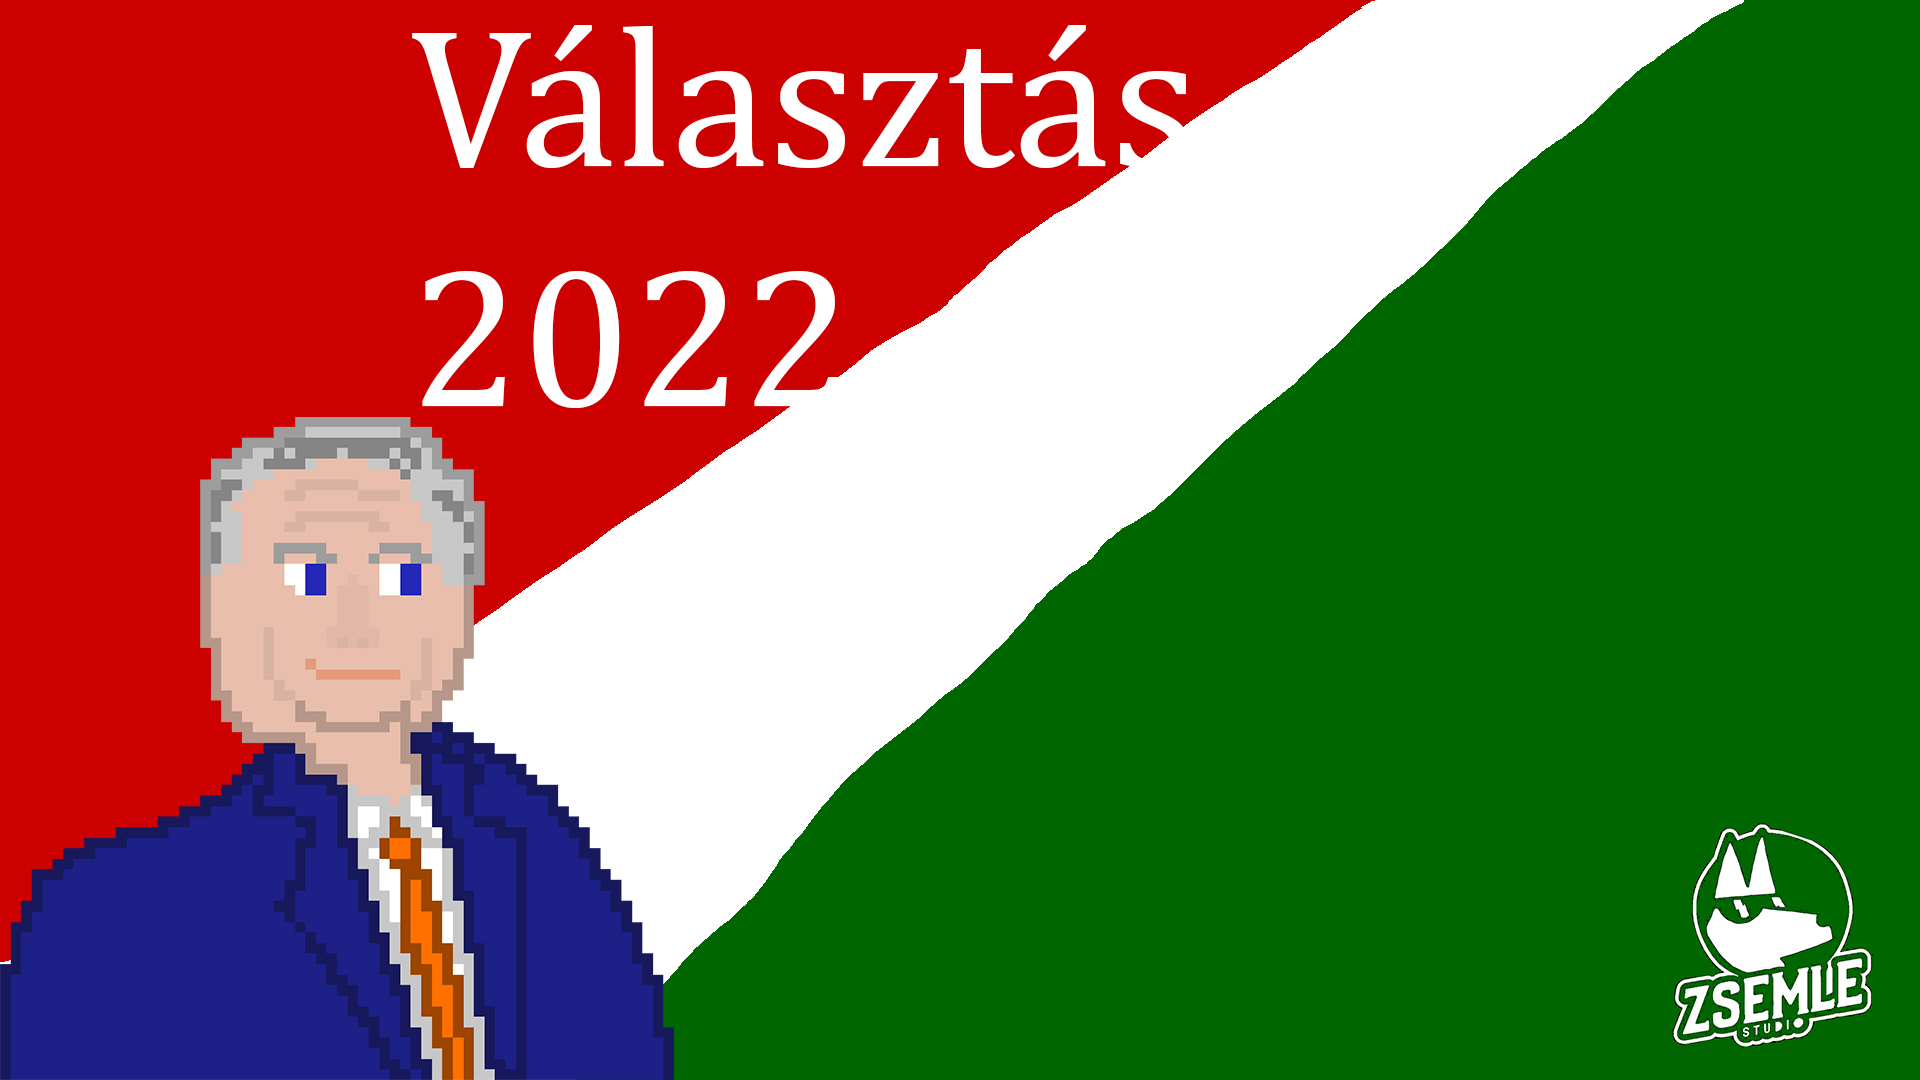 Választás 2022